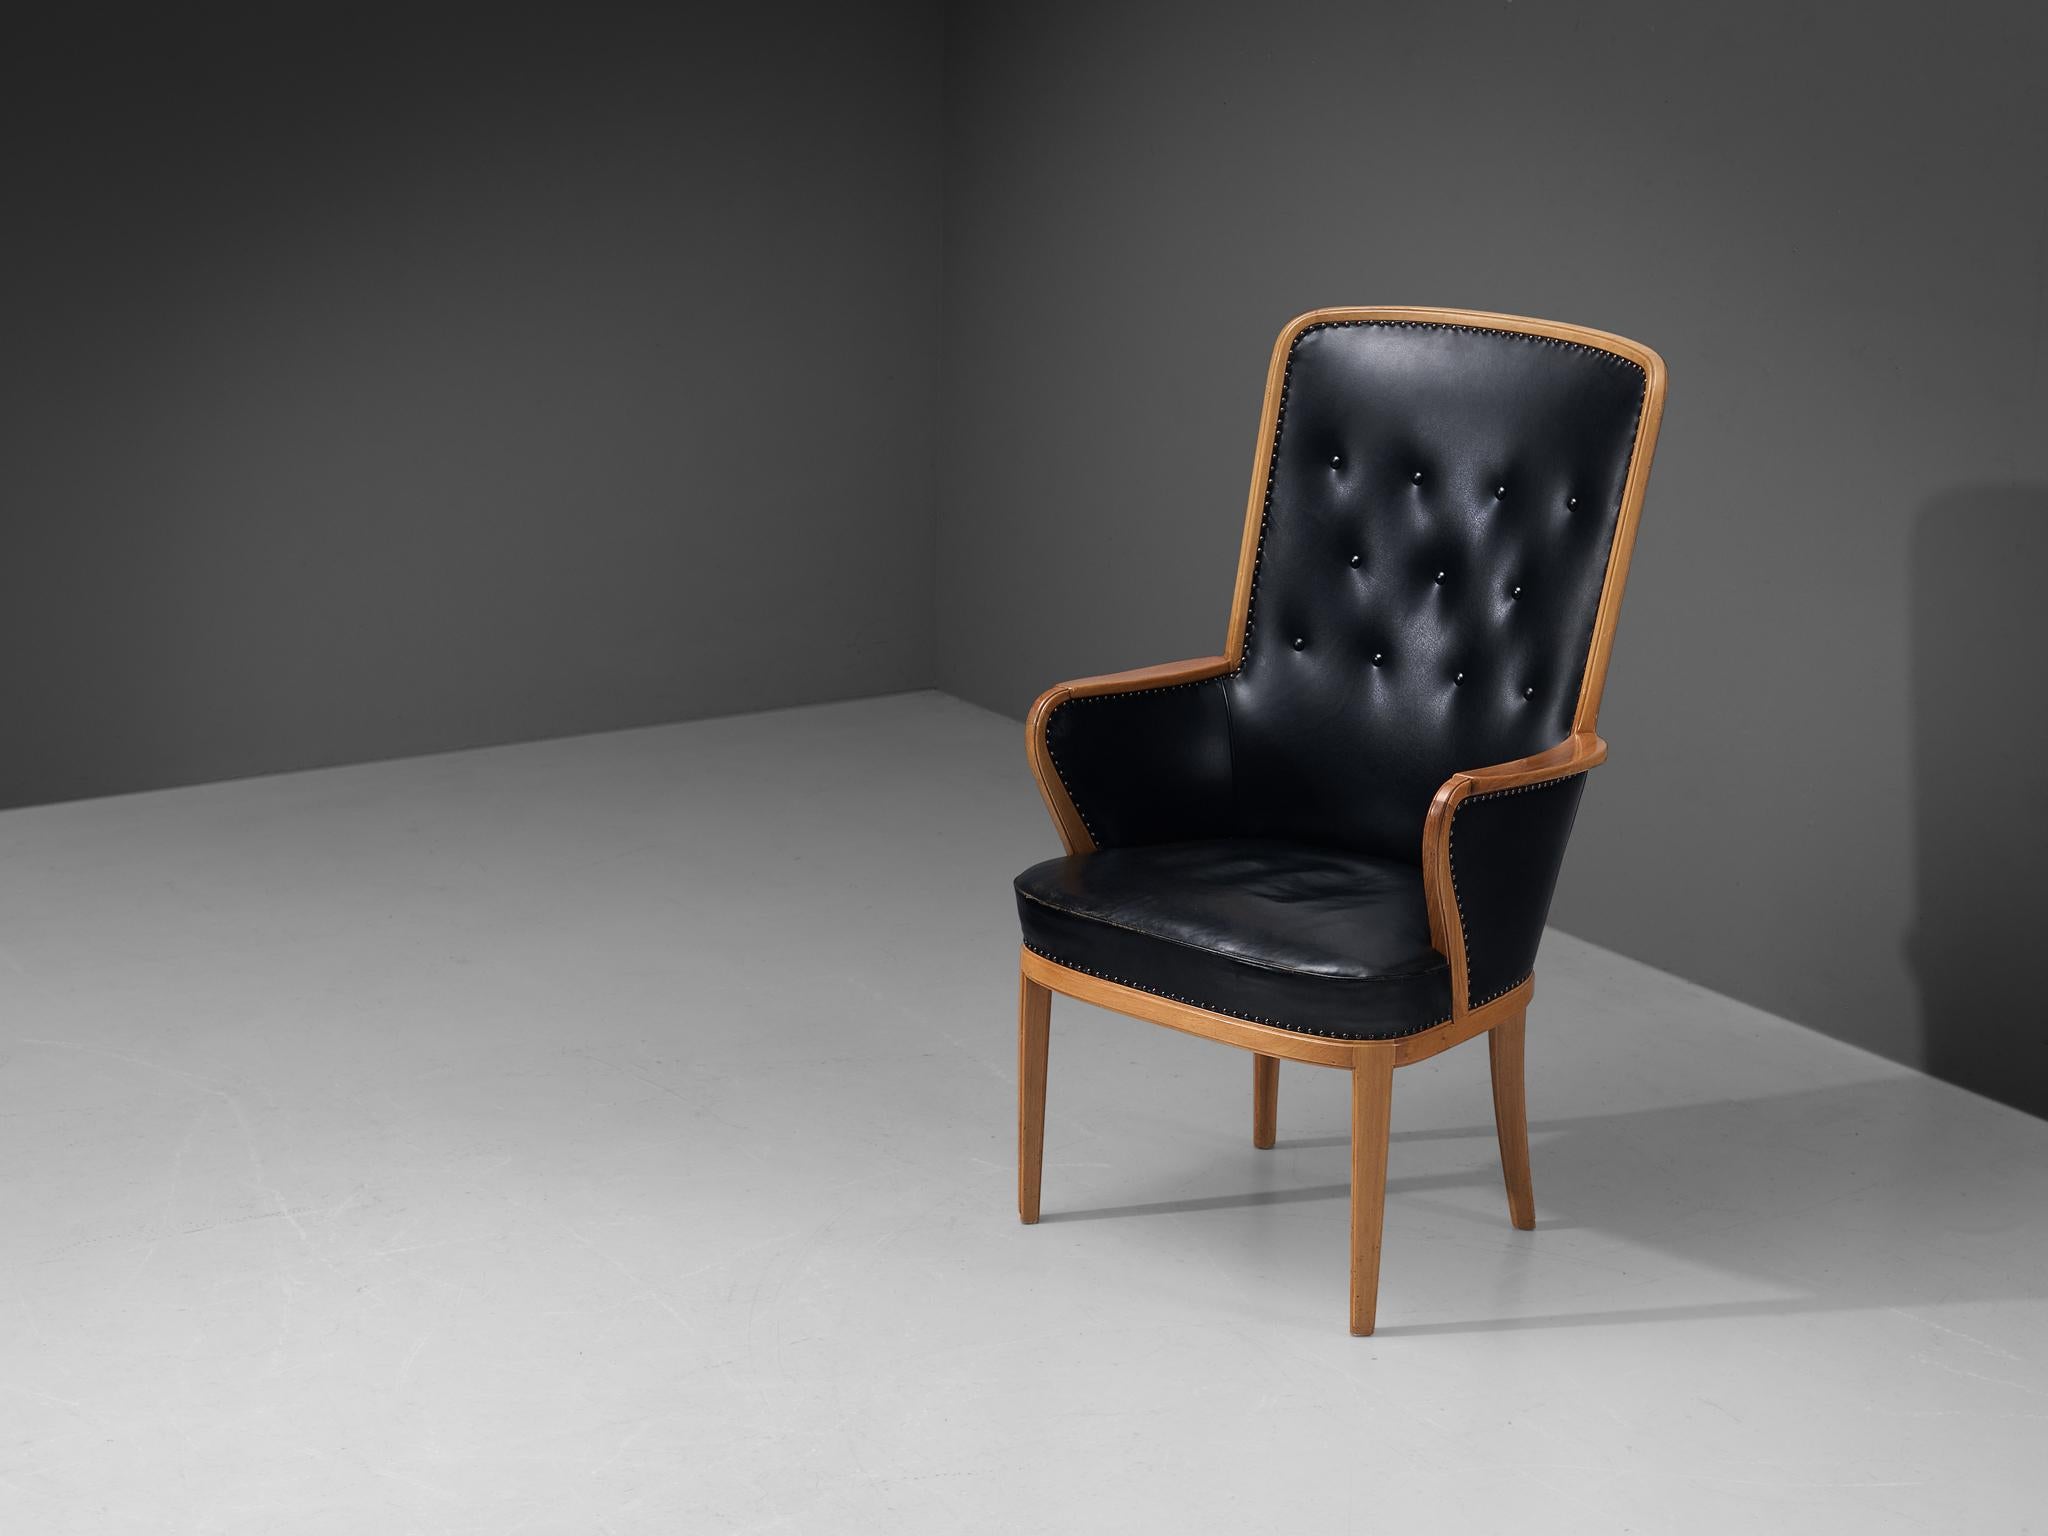 Carl Malmsten, chaise à haut dossier, noyer, laiton, cuir, Suède, années 1940. 

Rare fauteuil conçu par le designer suédois Carl Malmsten. Cette chaise présente un cadre en noyer chaud qui est joliment visible, et le motif des veines ressort